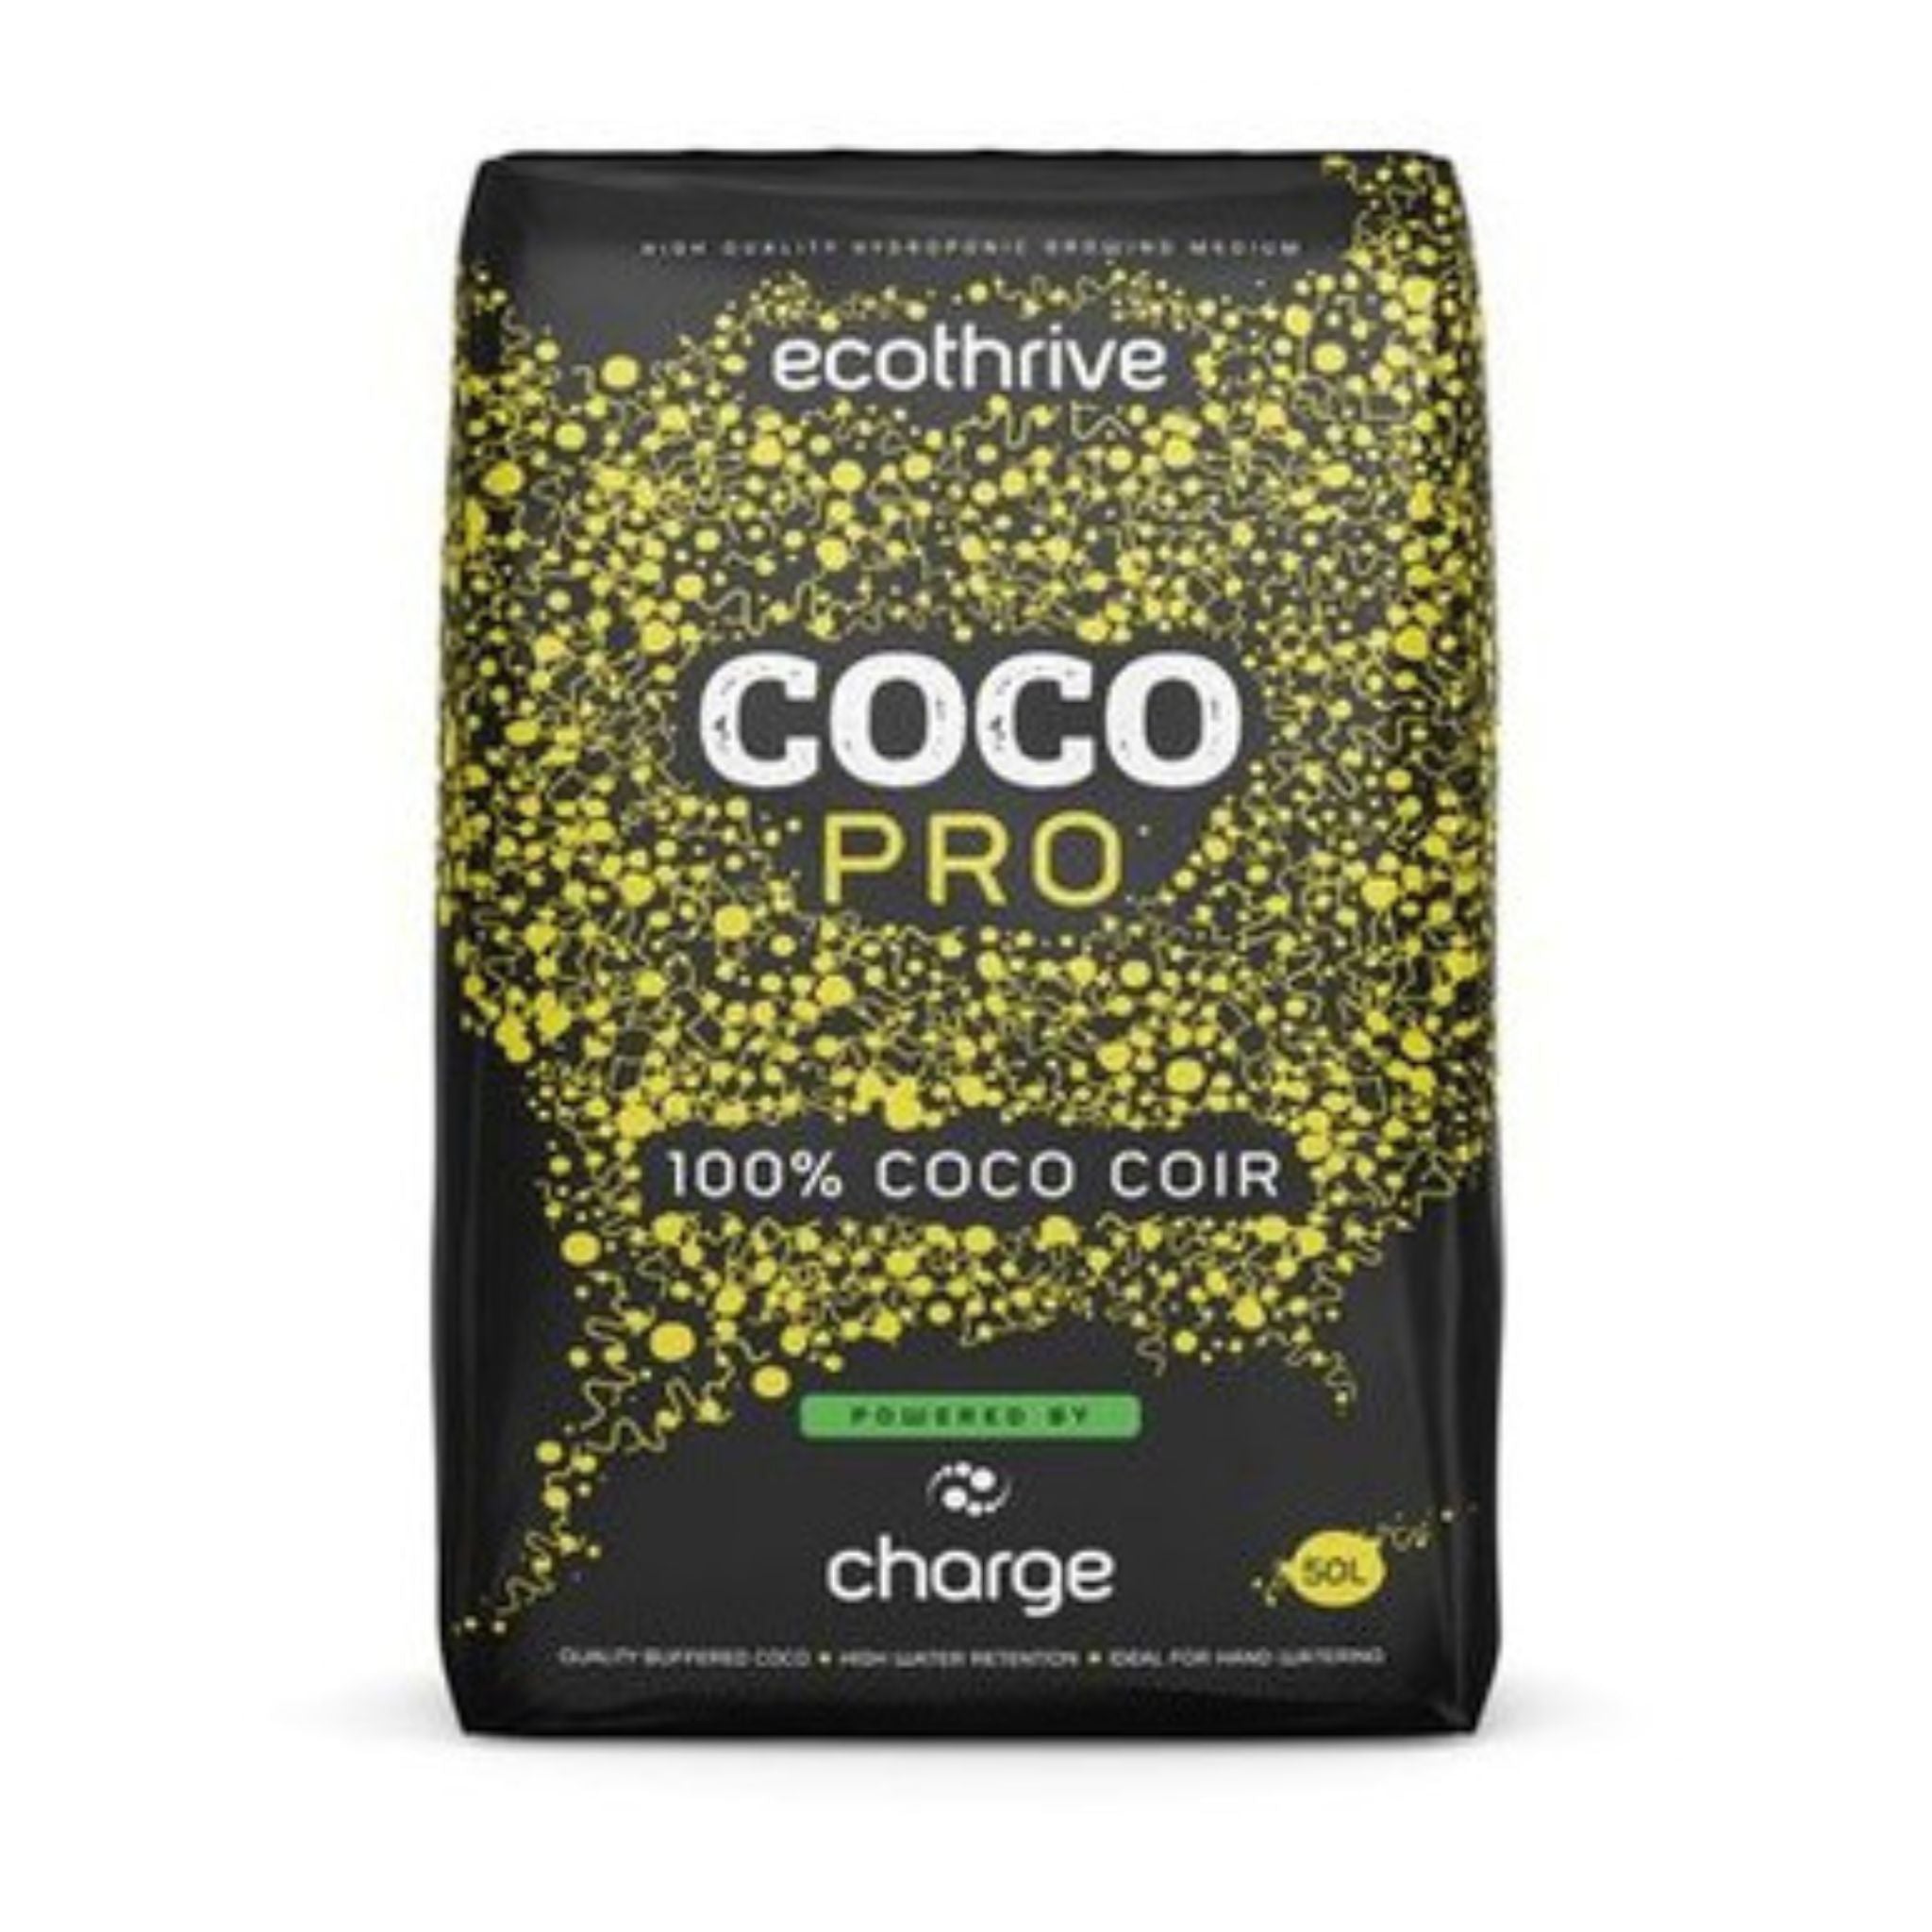 Ecothrive Coco Pro 100% Coco Coir 50L